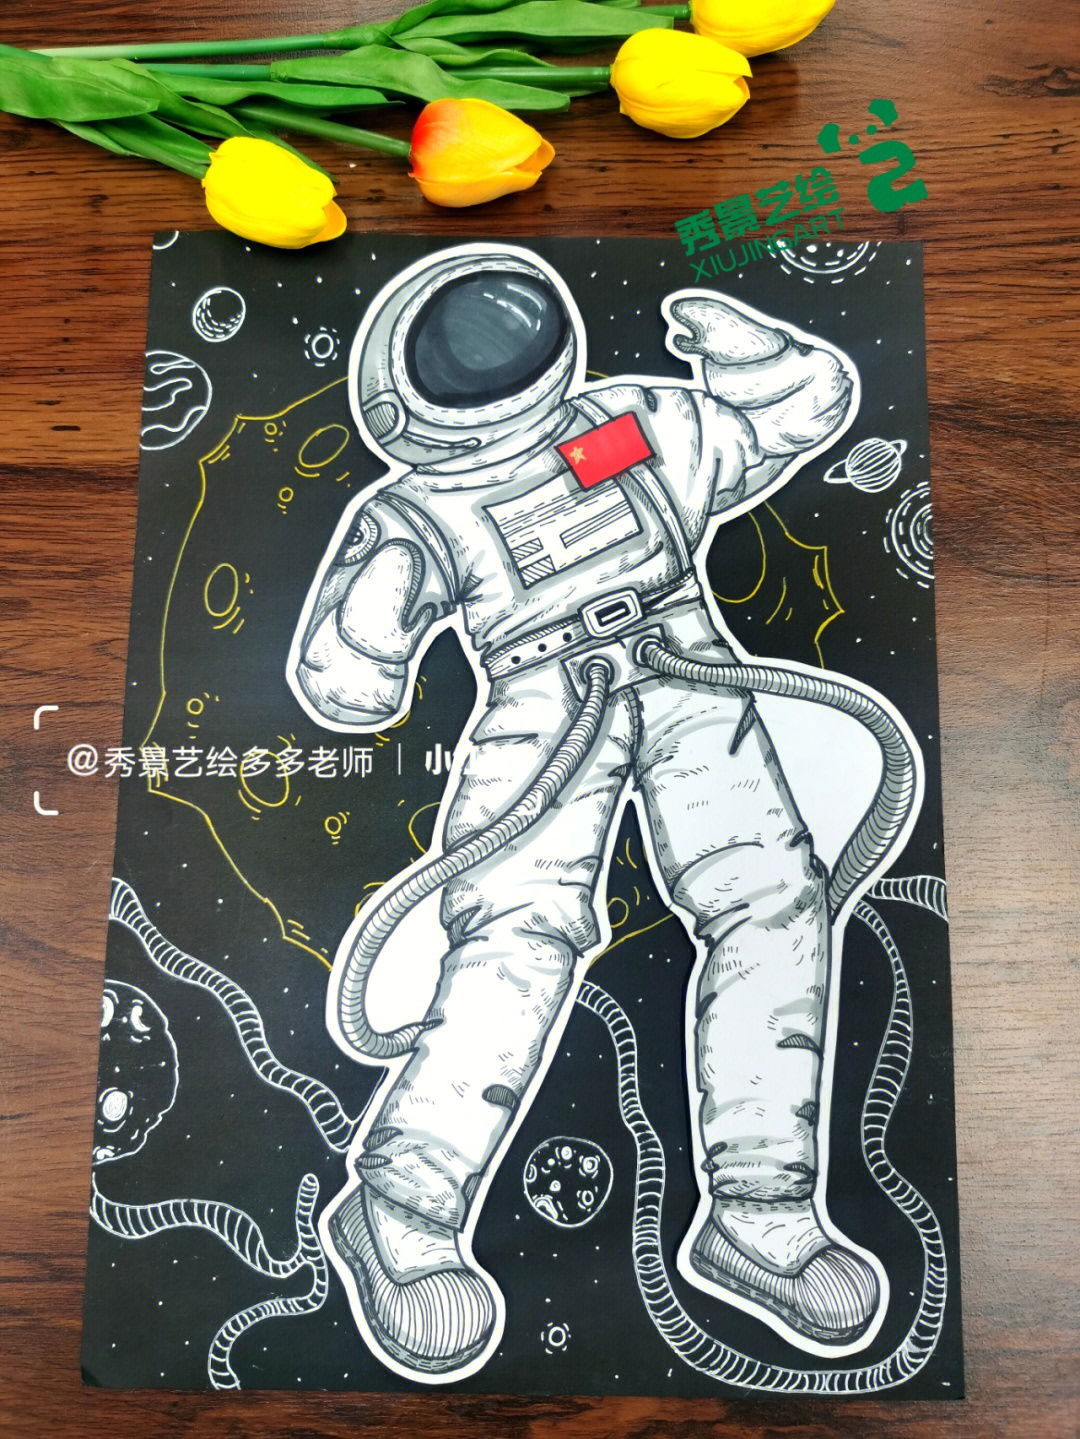 宇航员遨游太空咯创意美术作品